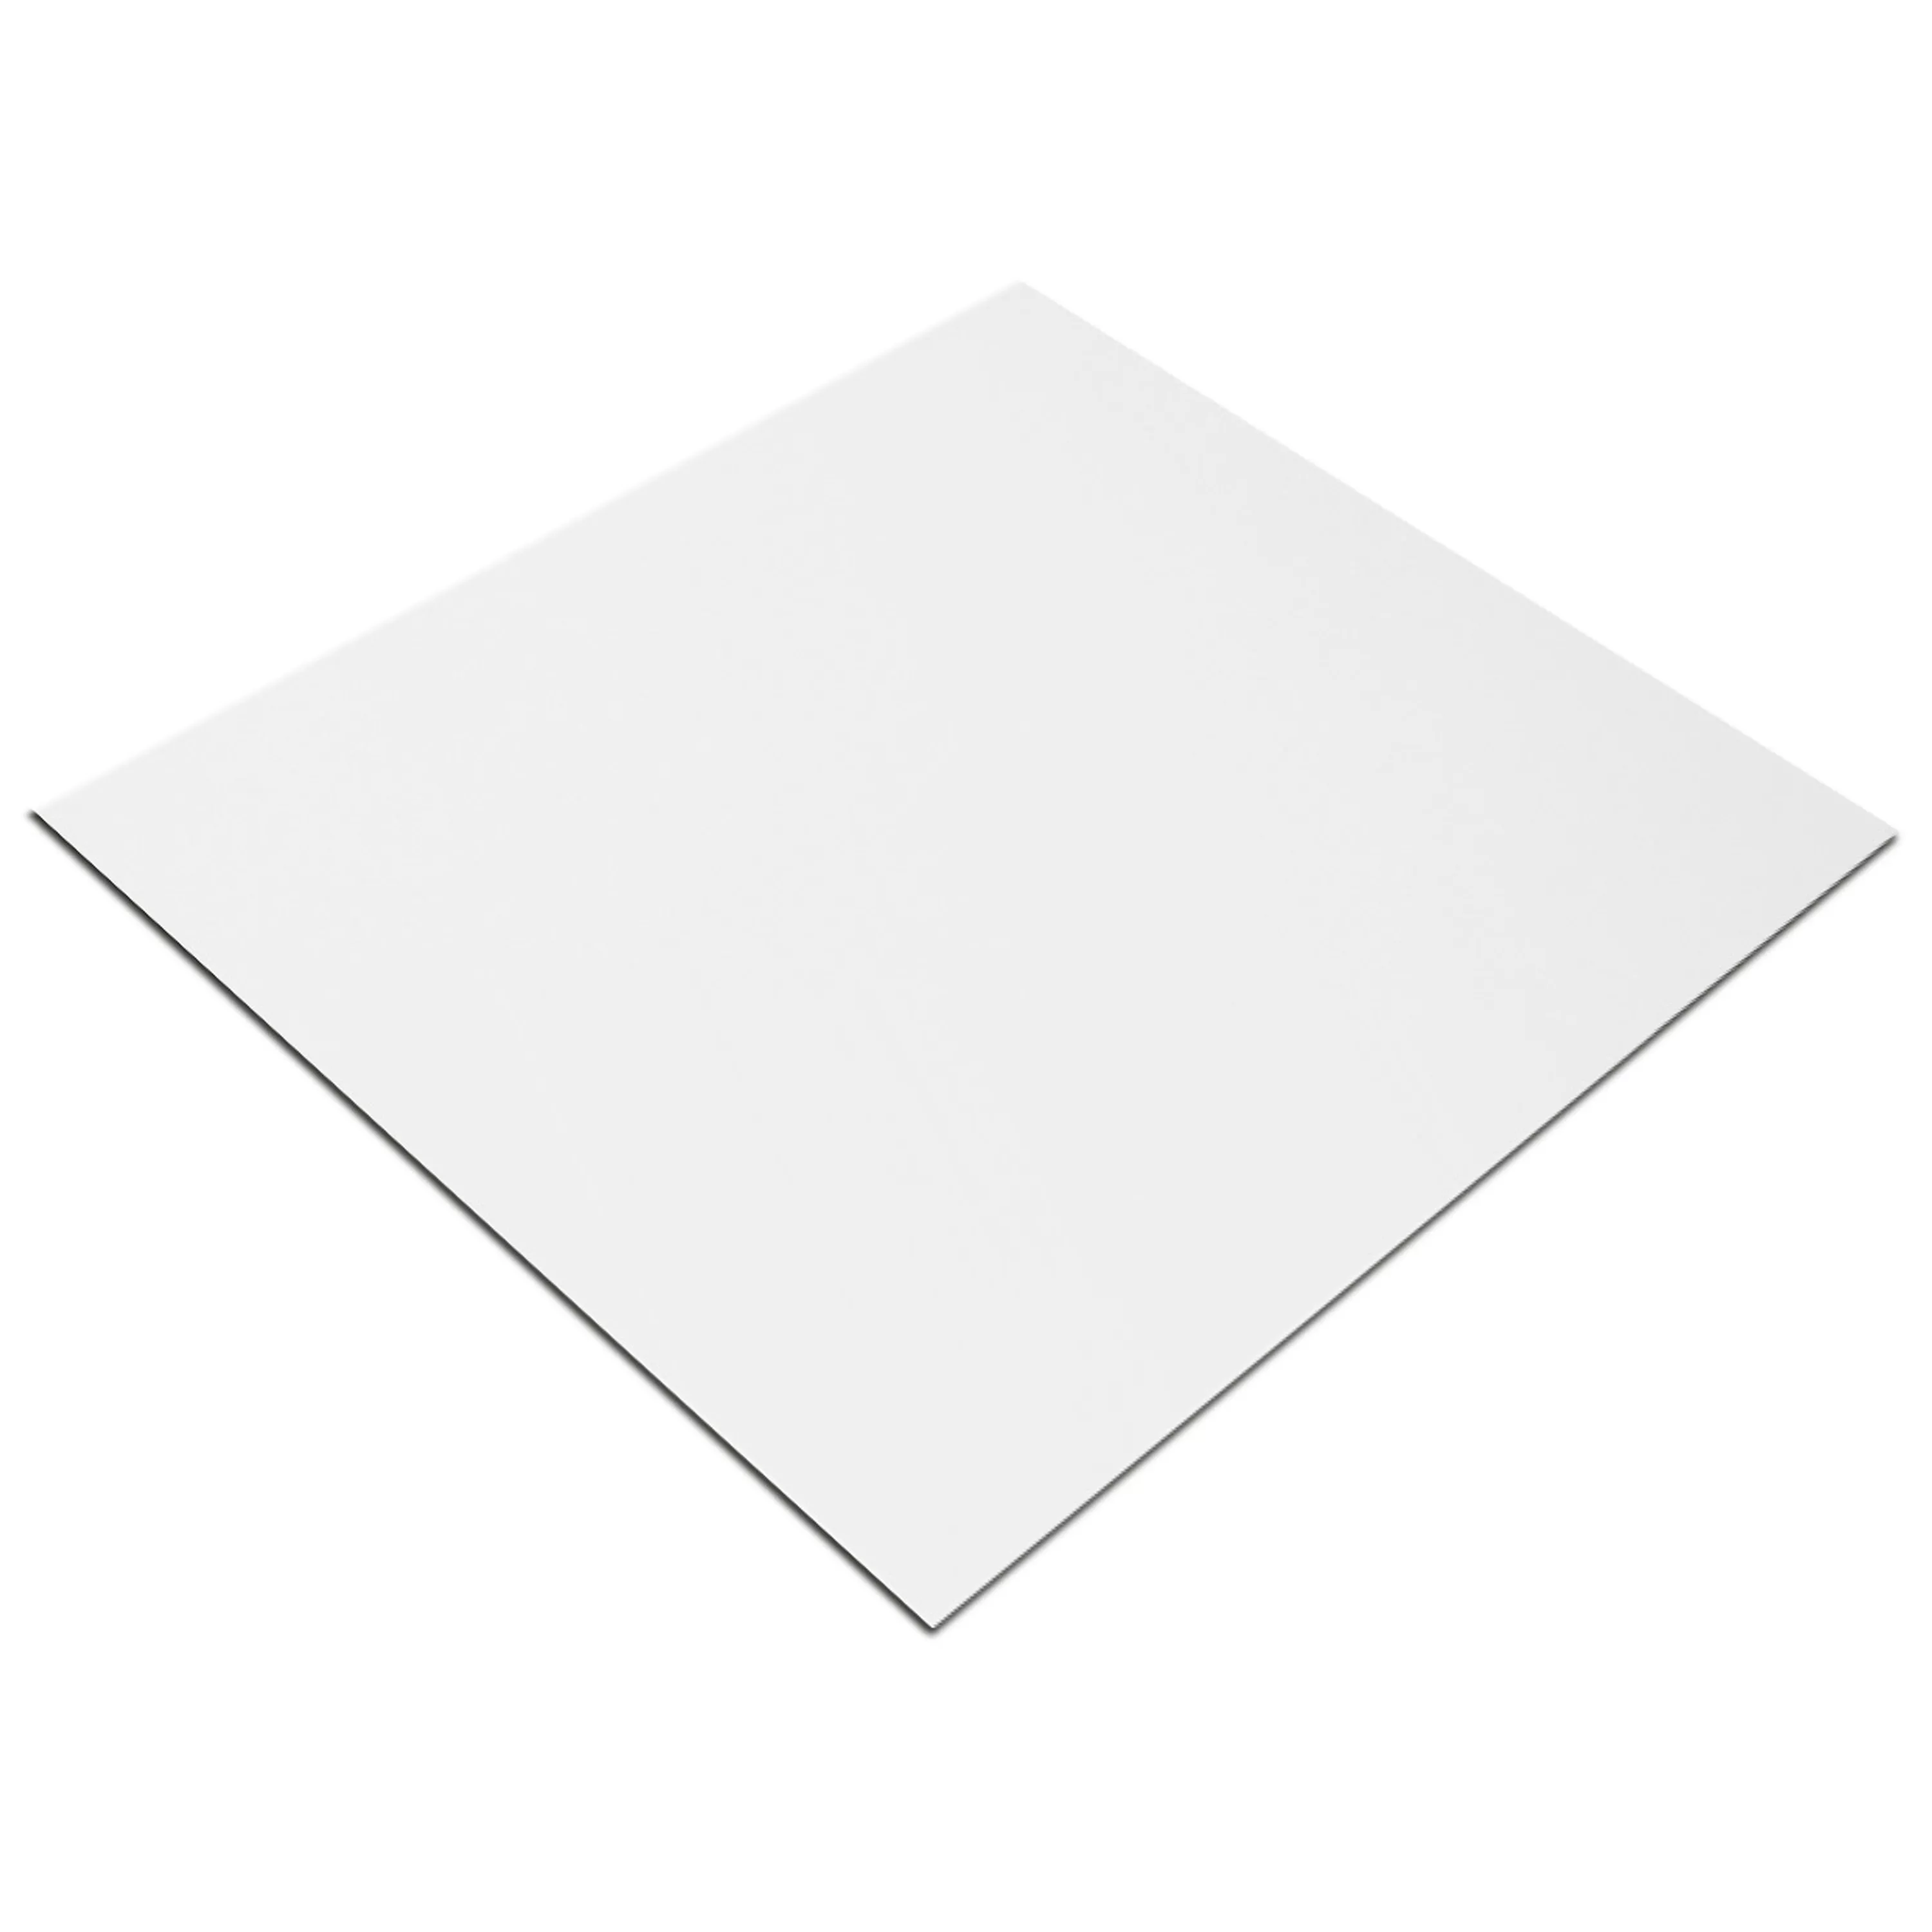 Próbka Płytki Ścienne Fenway Biały Matowy 25x33cm